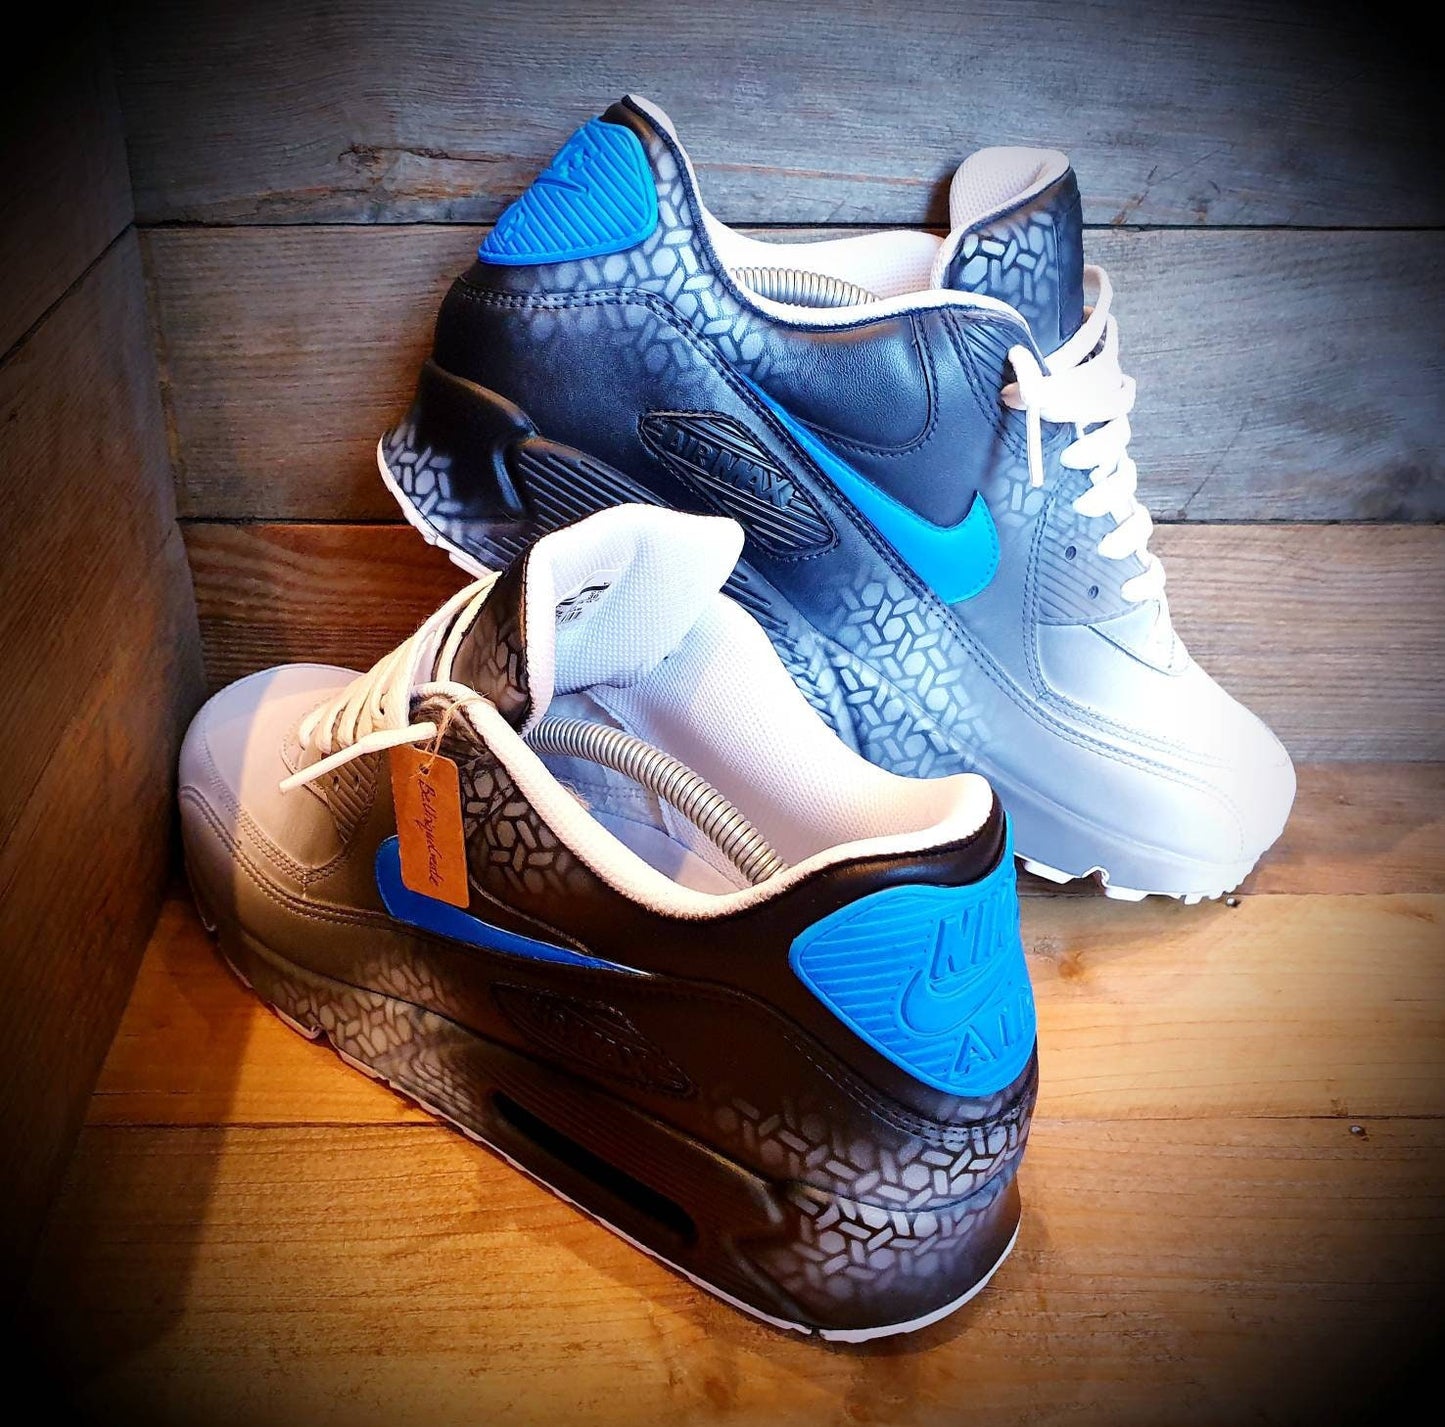 Custom Painted Air Max 90/Sneakers/Shoes/Kicks/Premium/Personalised/Neon Blue Graffiti